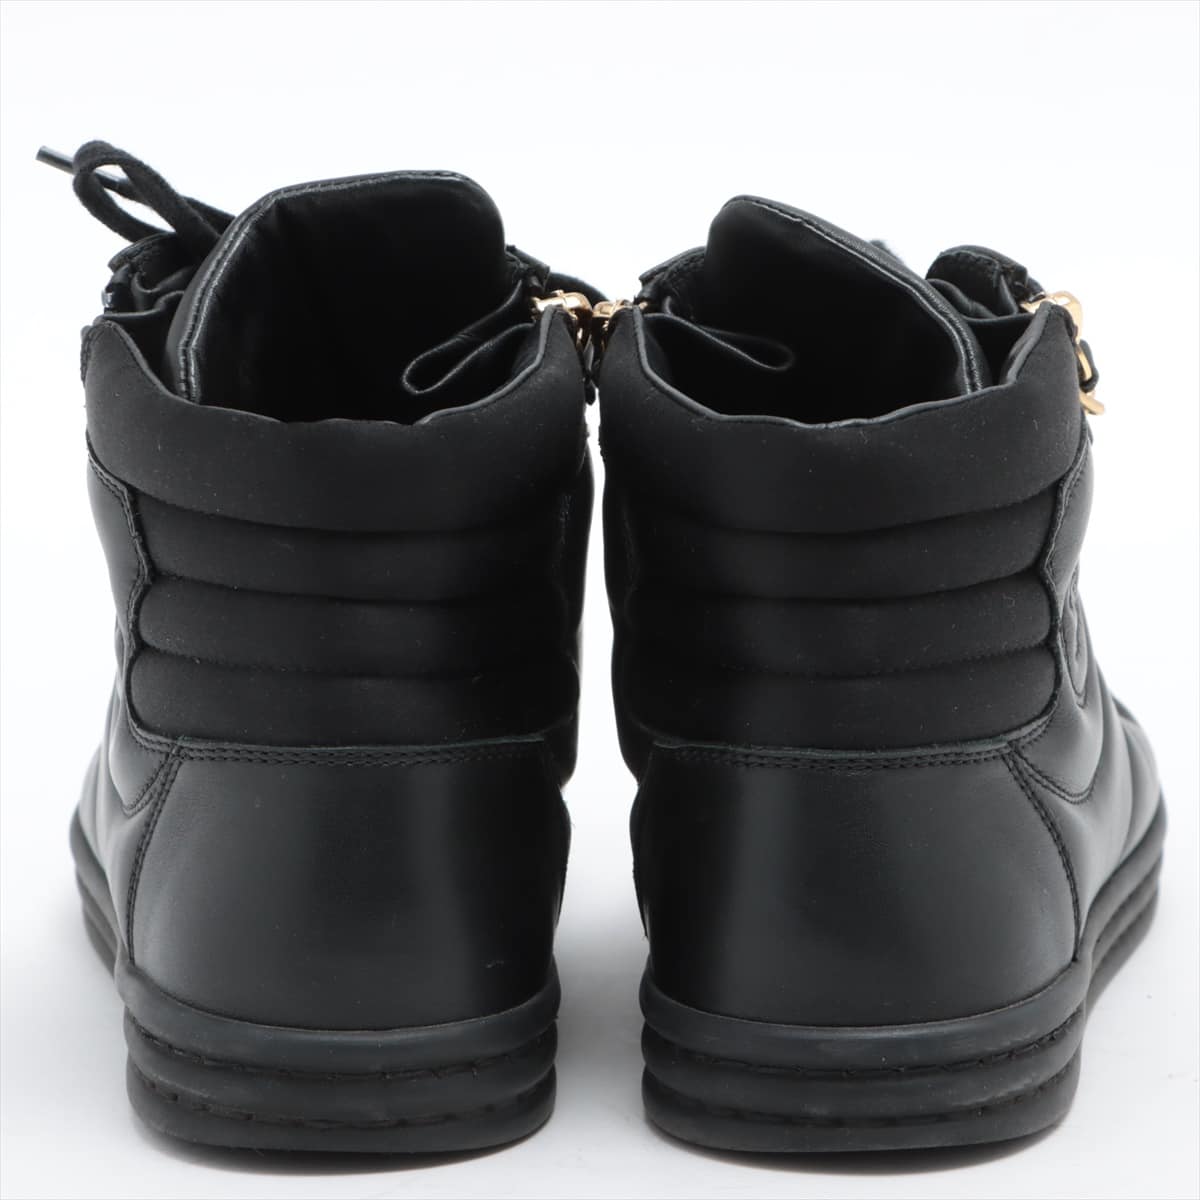 シャネル ハイカット スニーカー レザー 37 (23.5cm)ブーツ 靴 黒